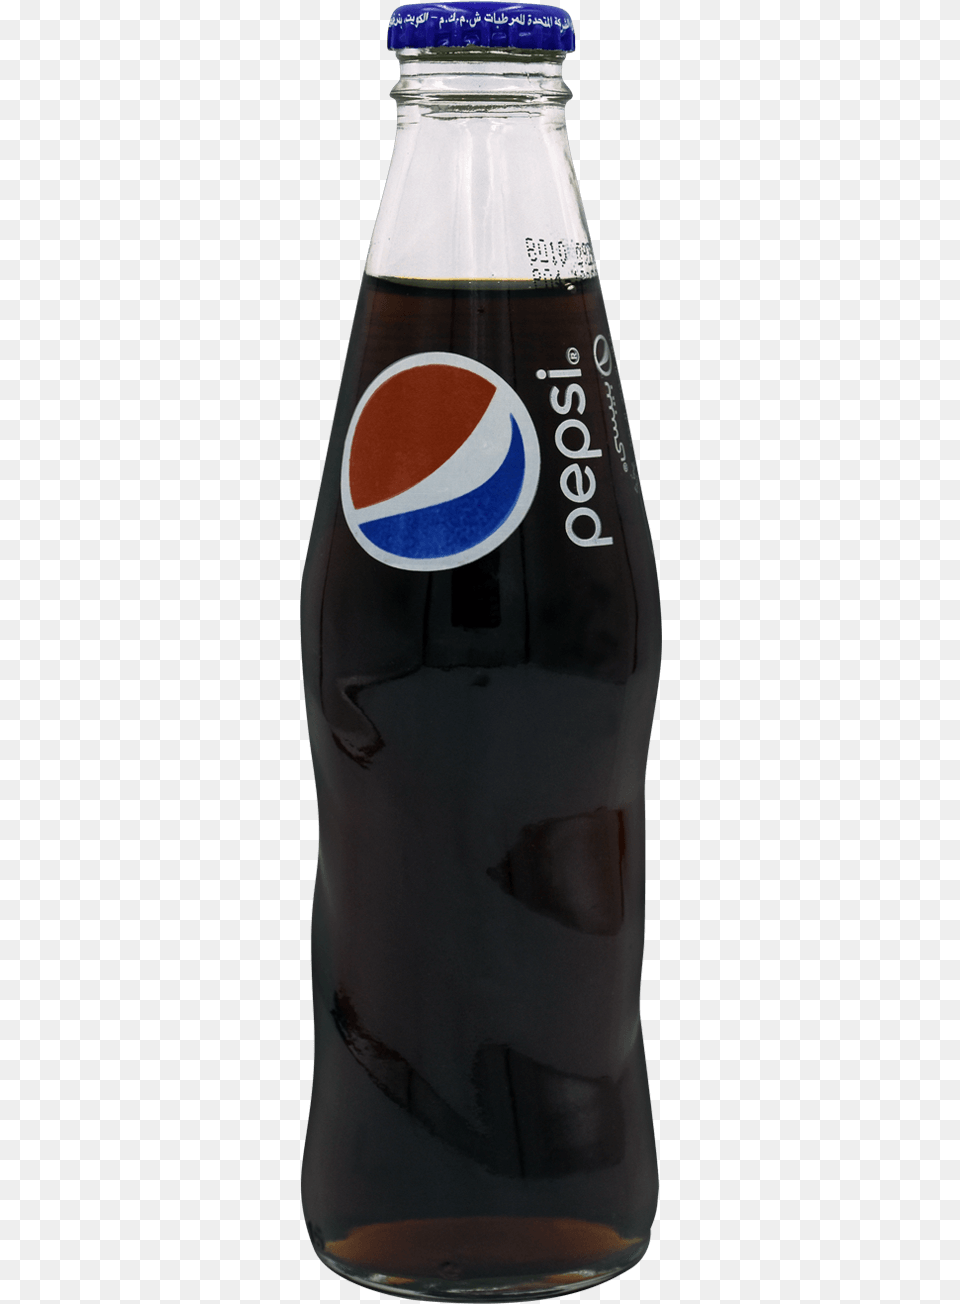 Pepsi Nrb 250ml Plastic Bottle, Beverage, Soda, Alcohol, Beer Png Image